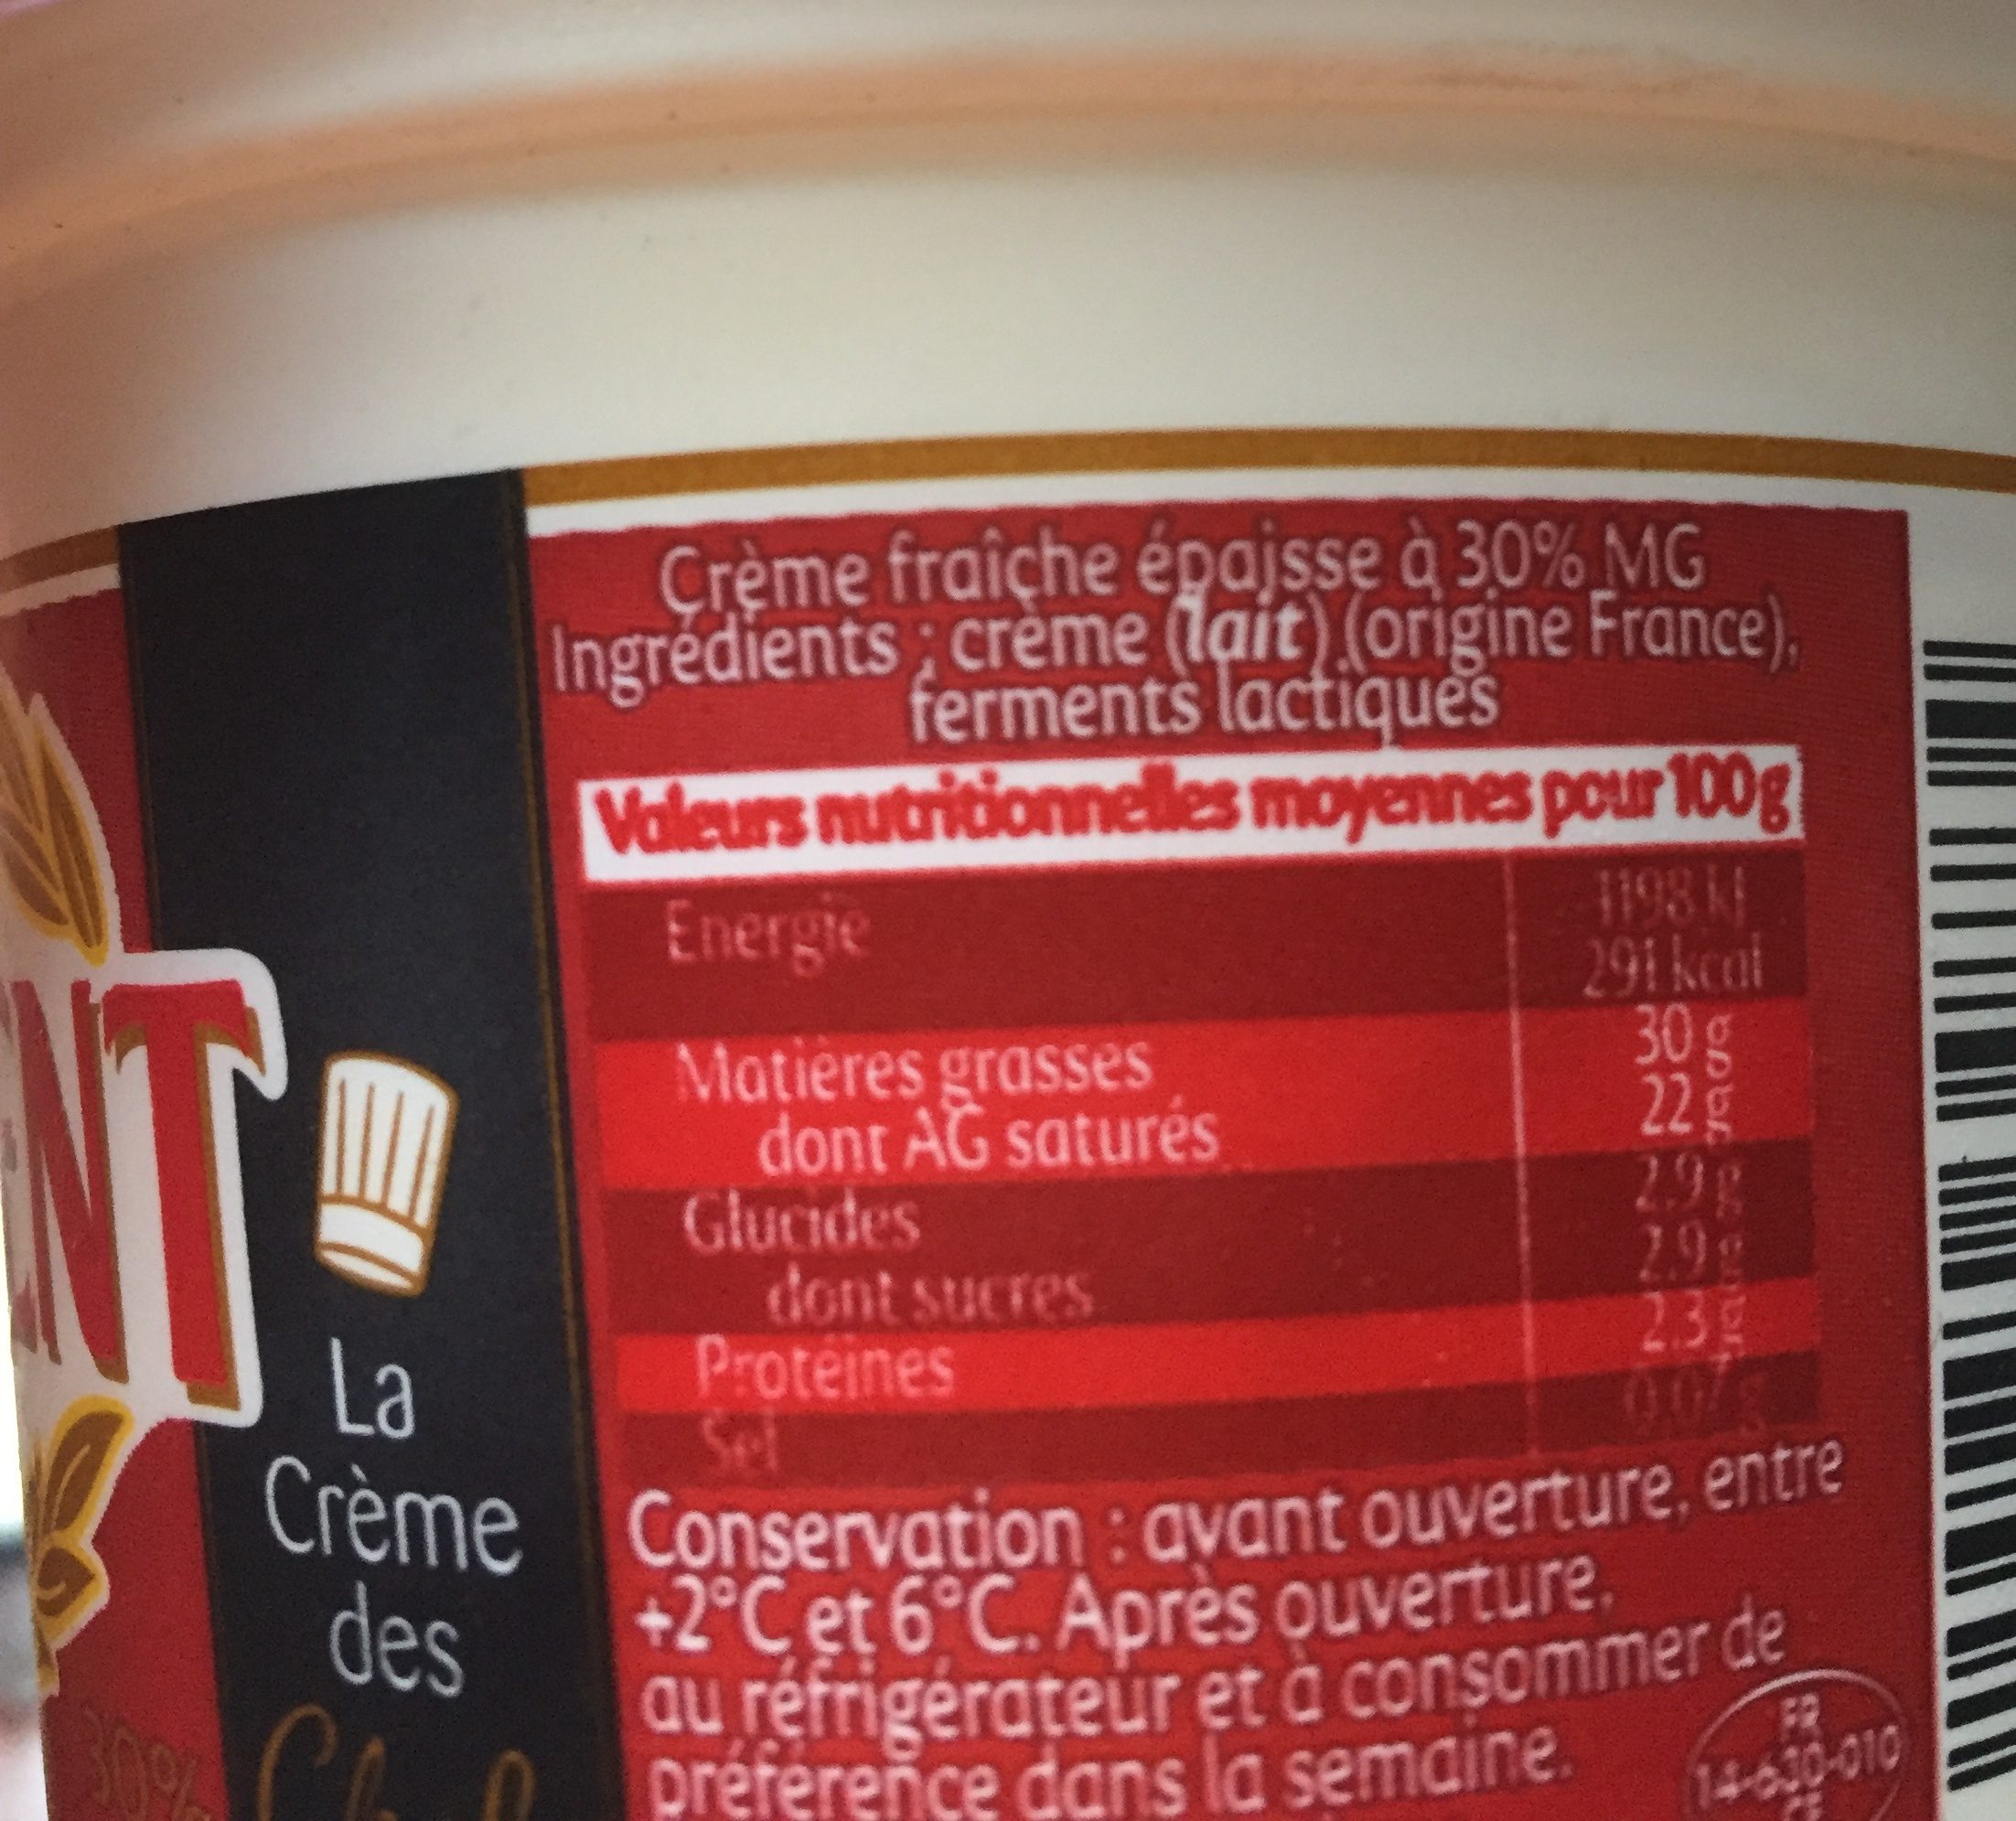 Crème fraîche gastronomique - Ingredients - fr